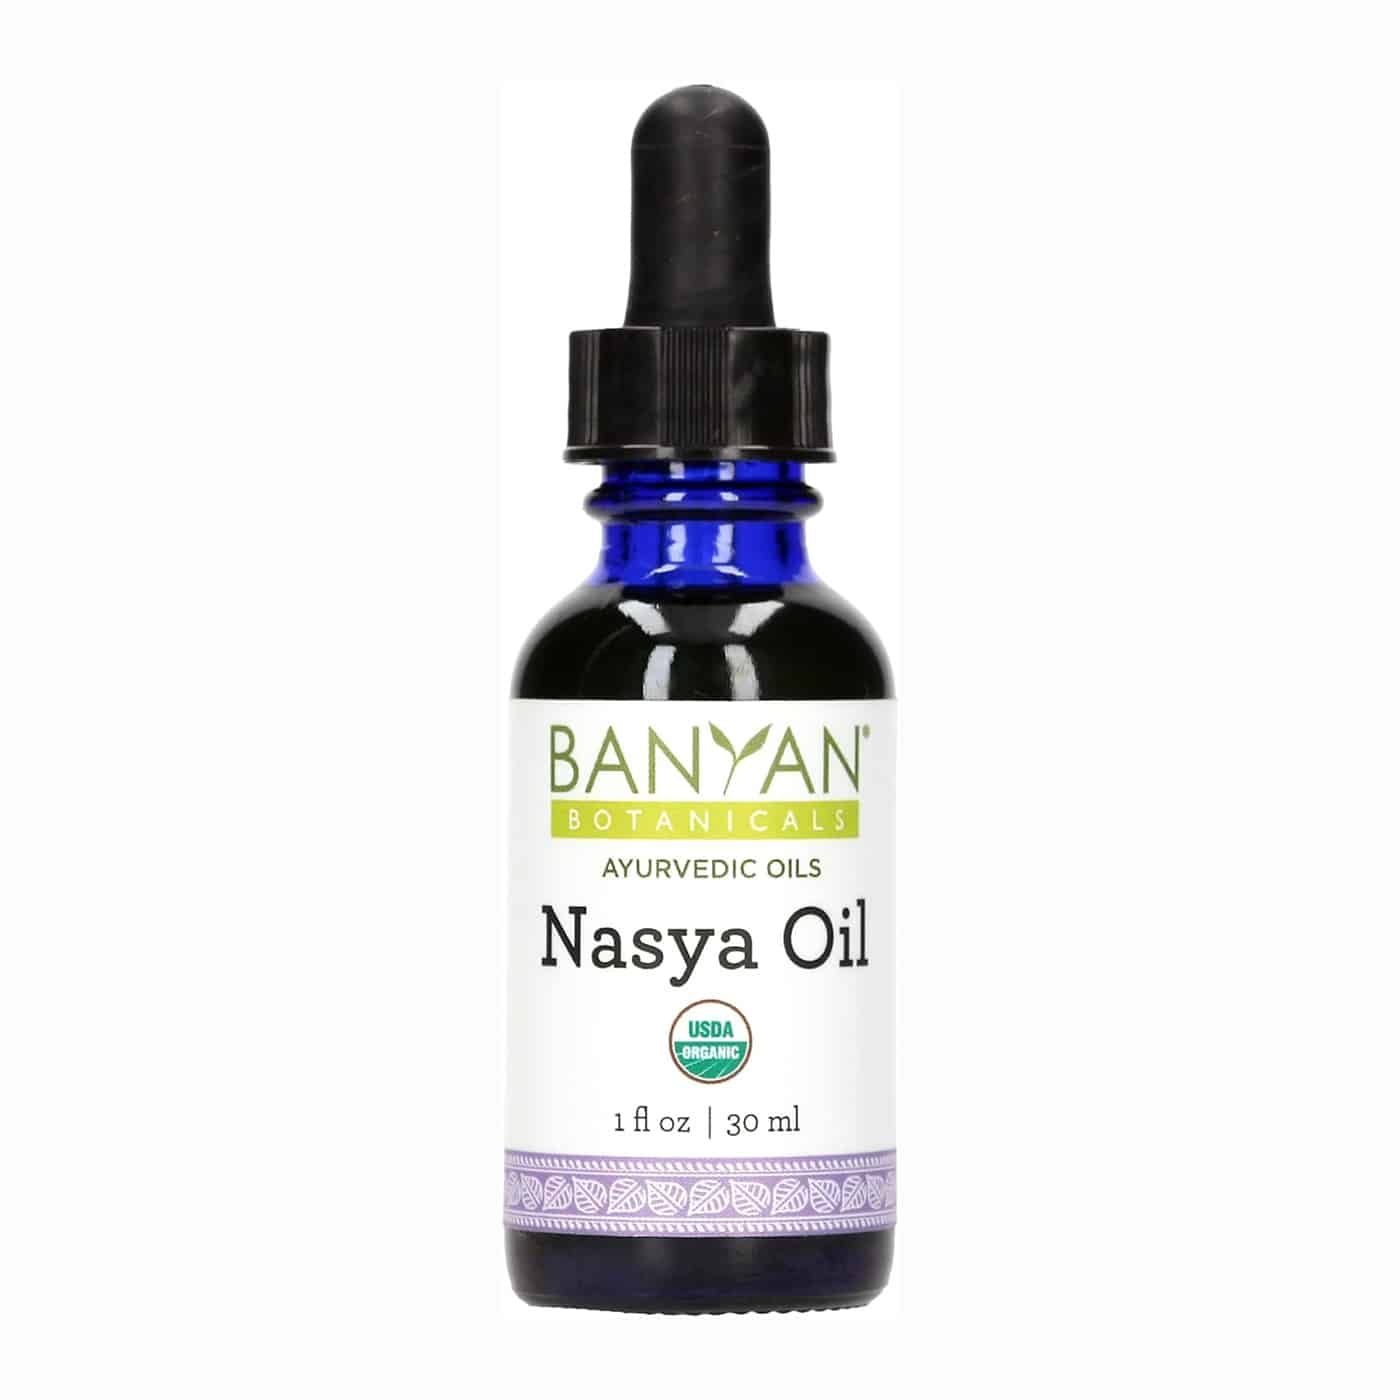 Nasya Oil (purchased or homemade!)